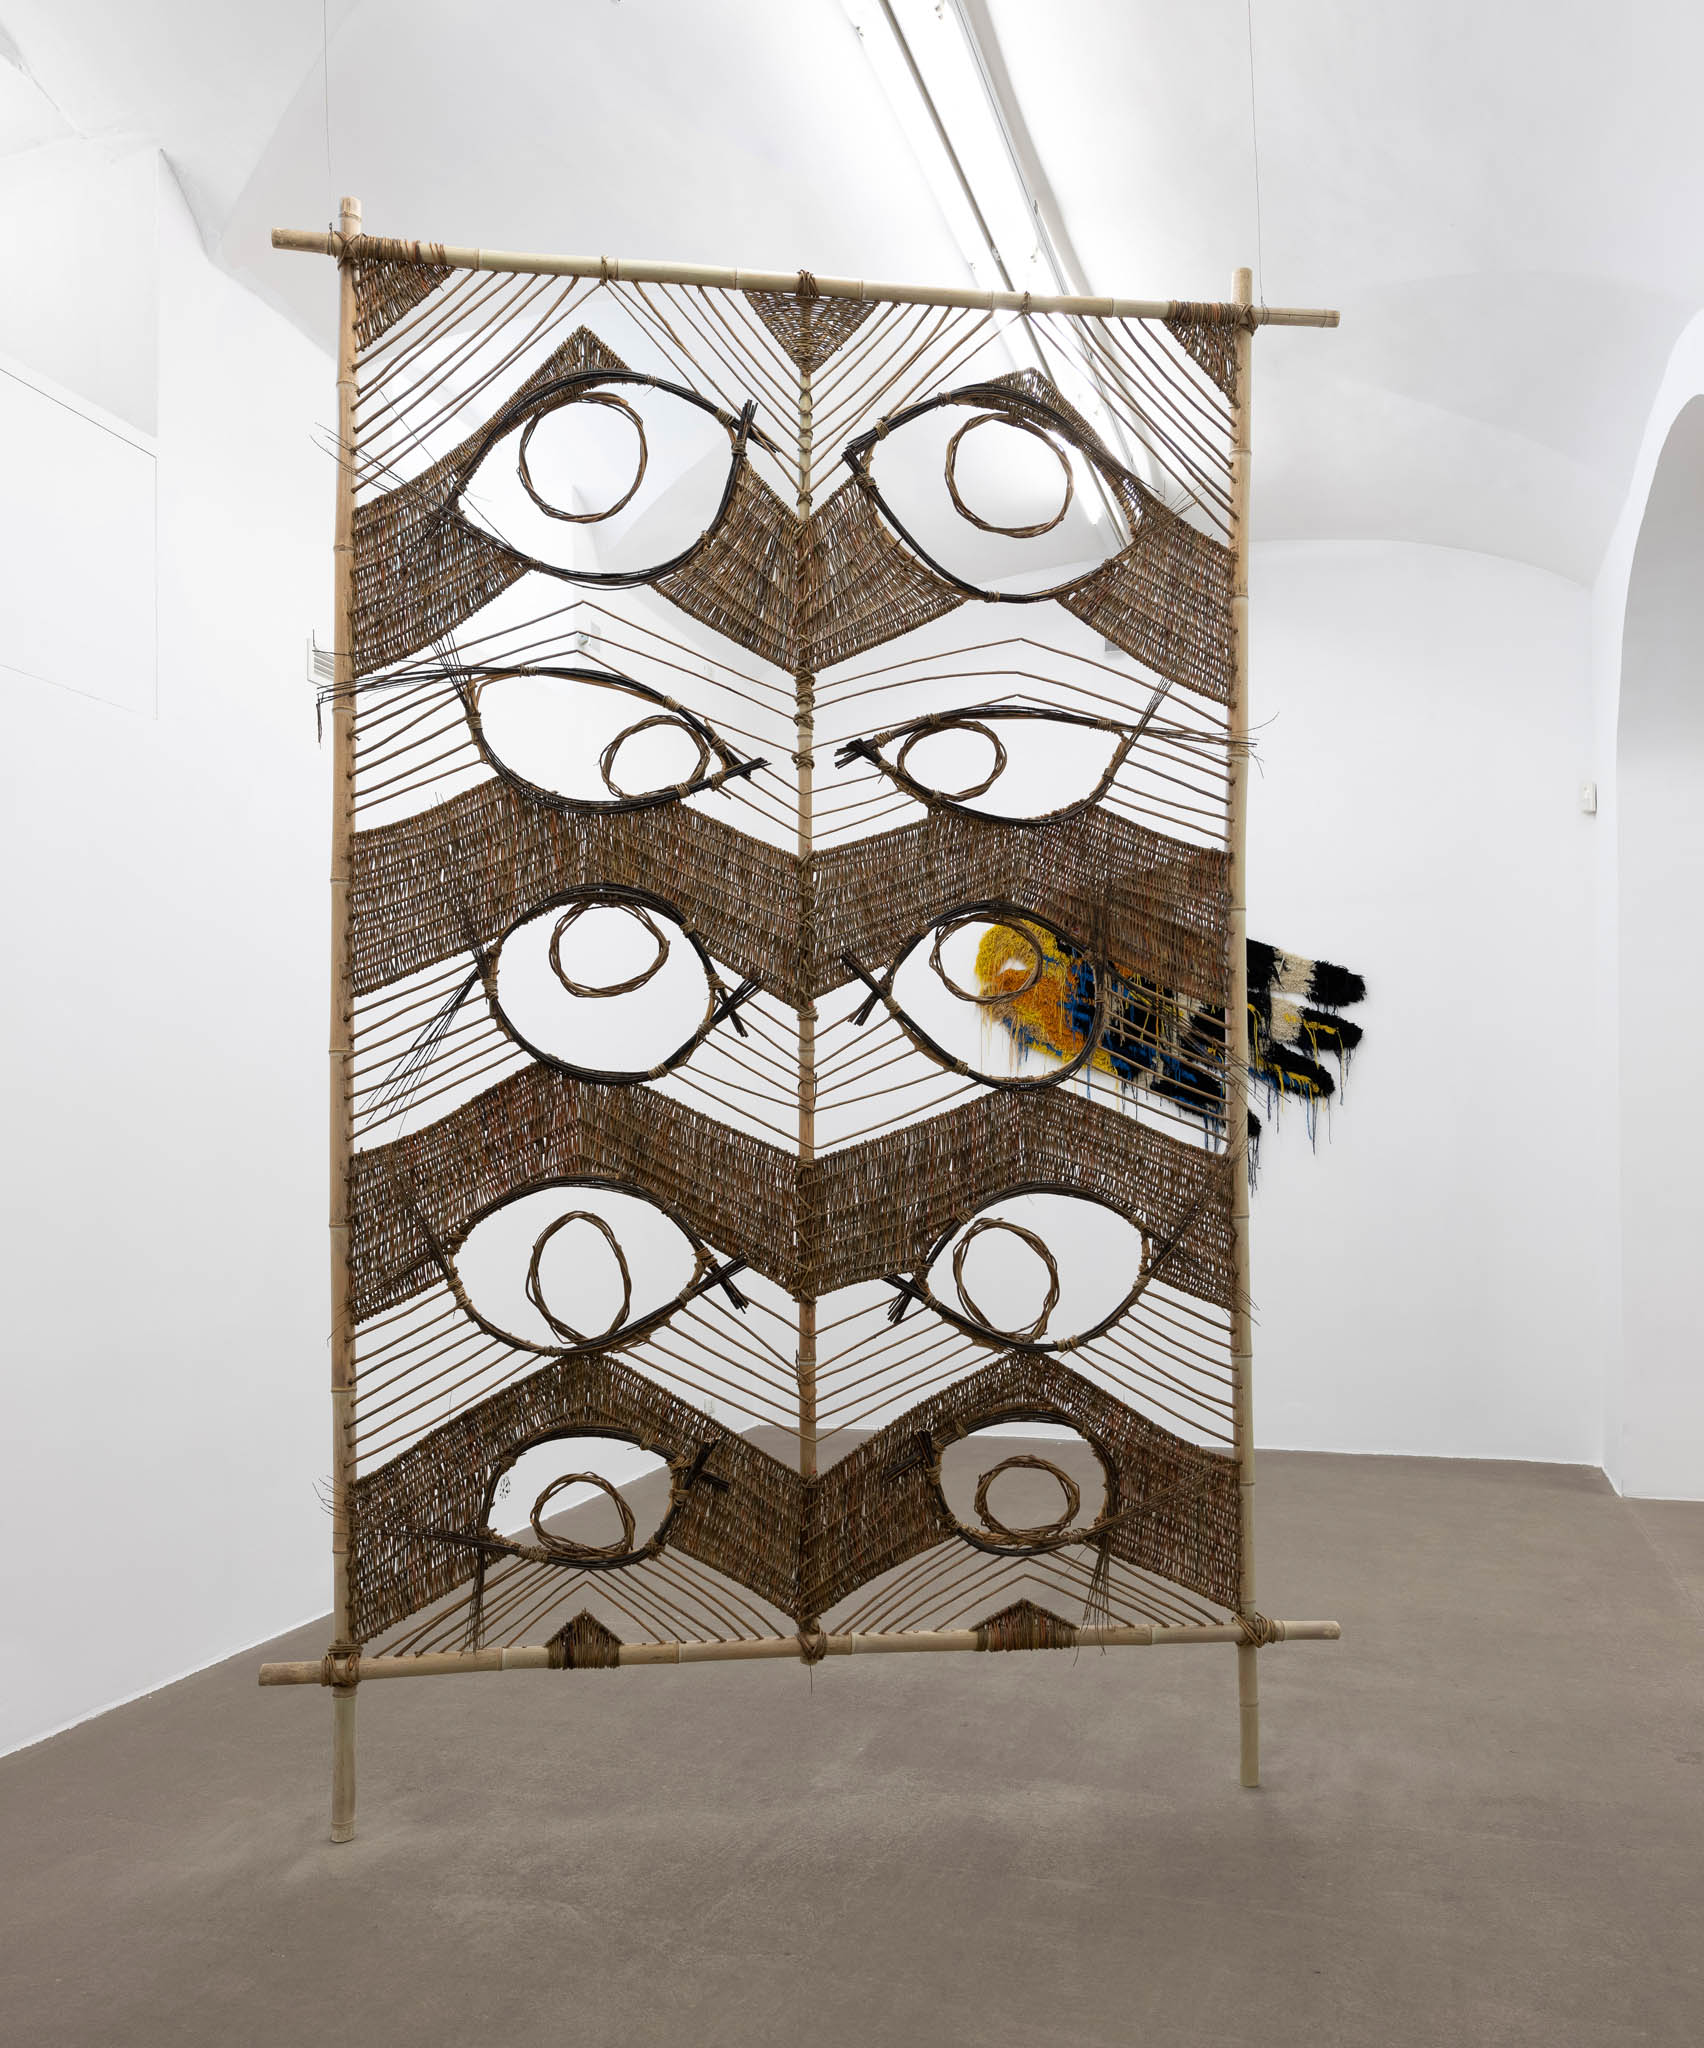 Caroline Achaintre, Permanente. Installation view at Fondazione Giuliani, photo by Giorgio Benni